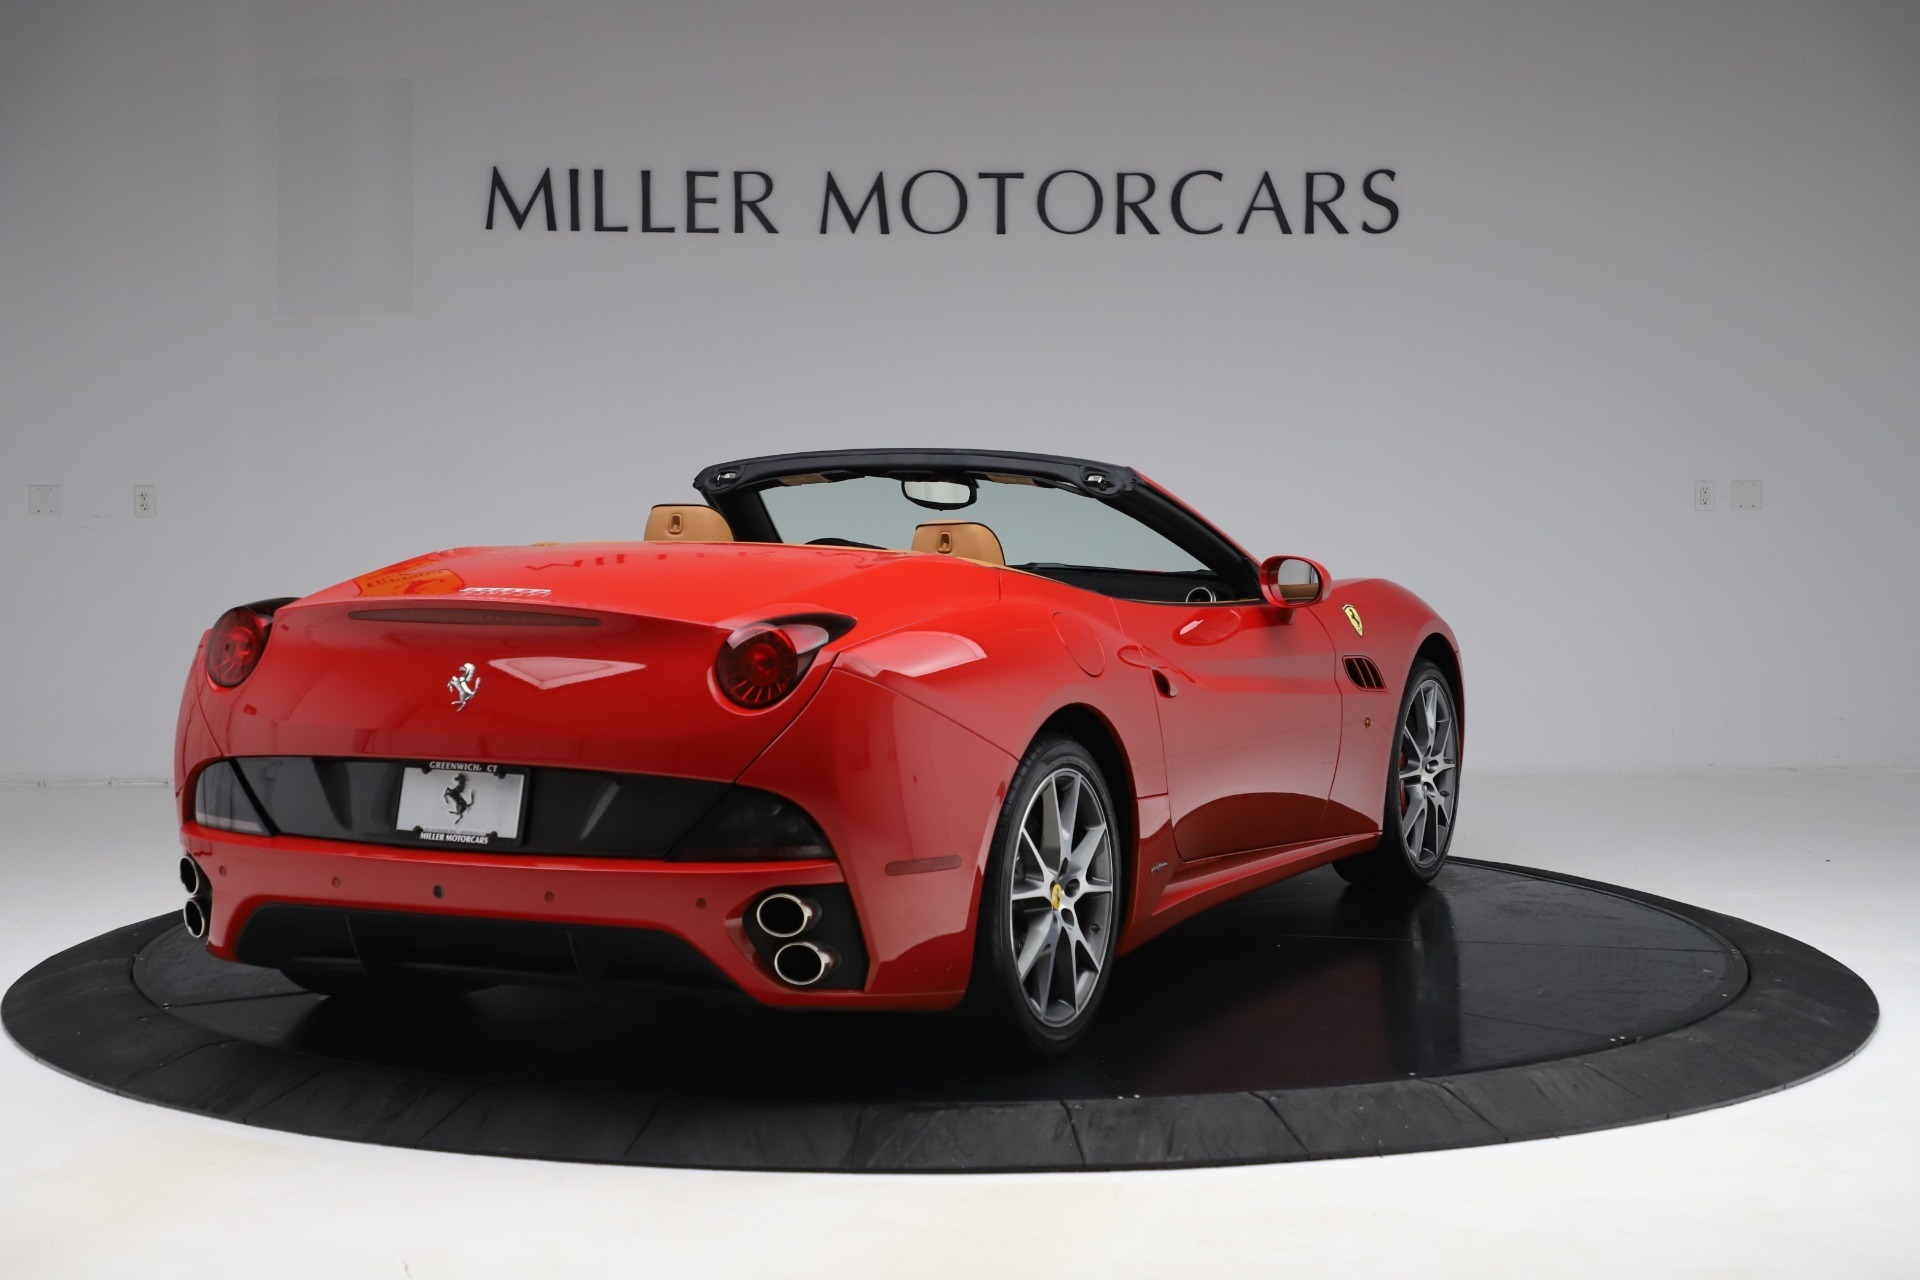 Pre-Owned 2013 Ferrari California 30 For Sale () | Miller ...